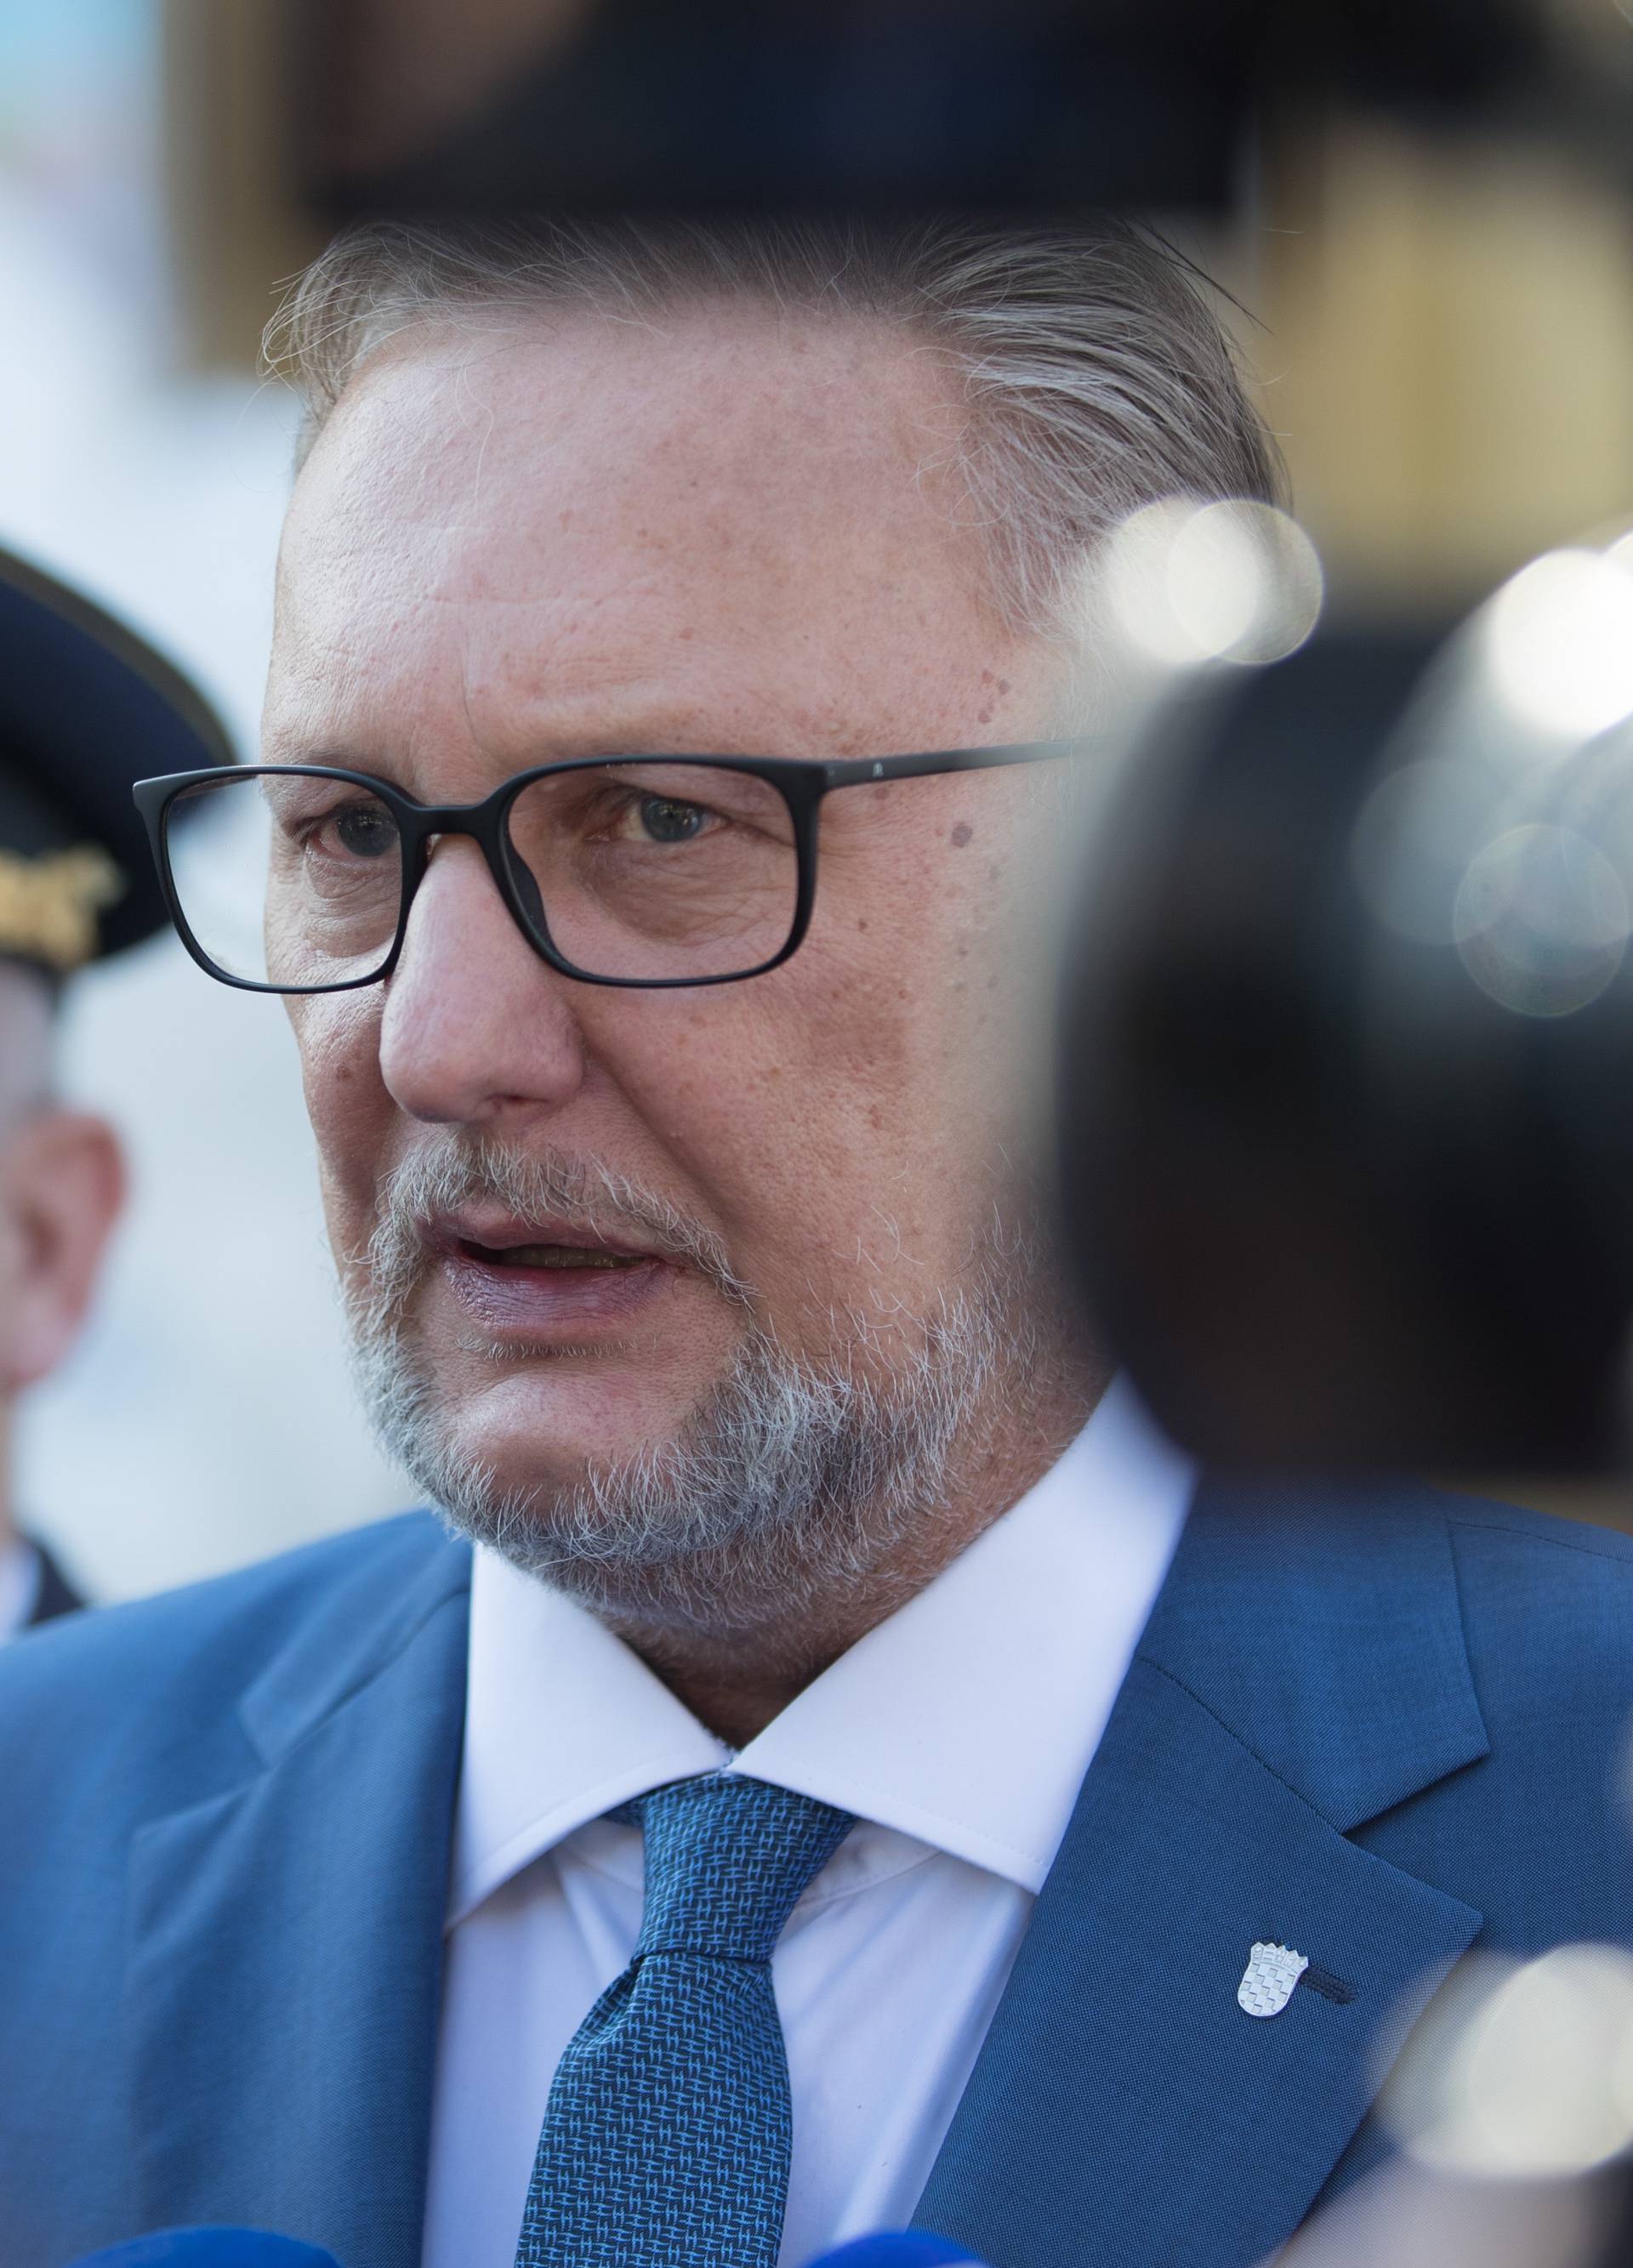 Ministar Božinović tvrdi: Slučaj Žalac je sad u rukama DORH-a